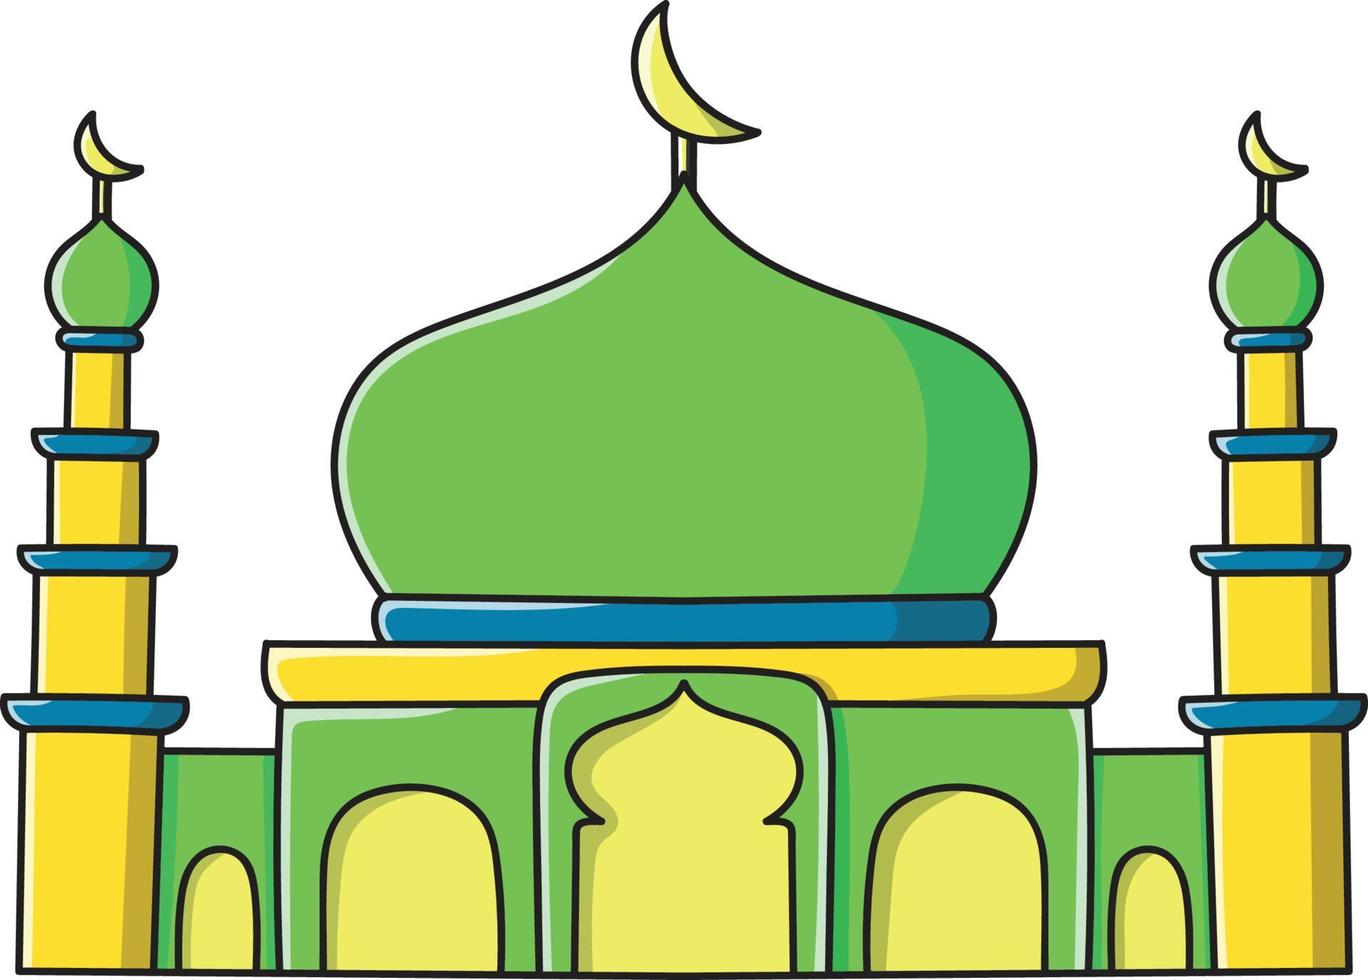 ilustração vetorial de mesquita com dois pilares em verde ótimo para decorações, adesivos, banners, anúncios, mídias sociais, revistas, livros, livros para colorir e outros elementos gráficos. vetor